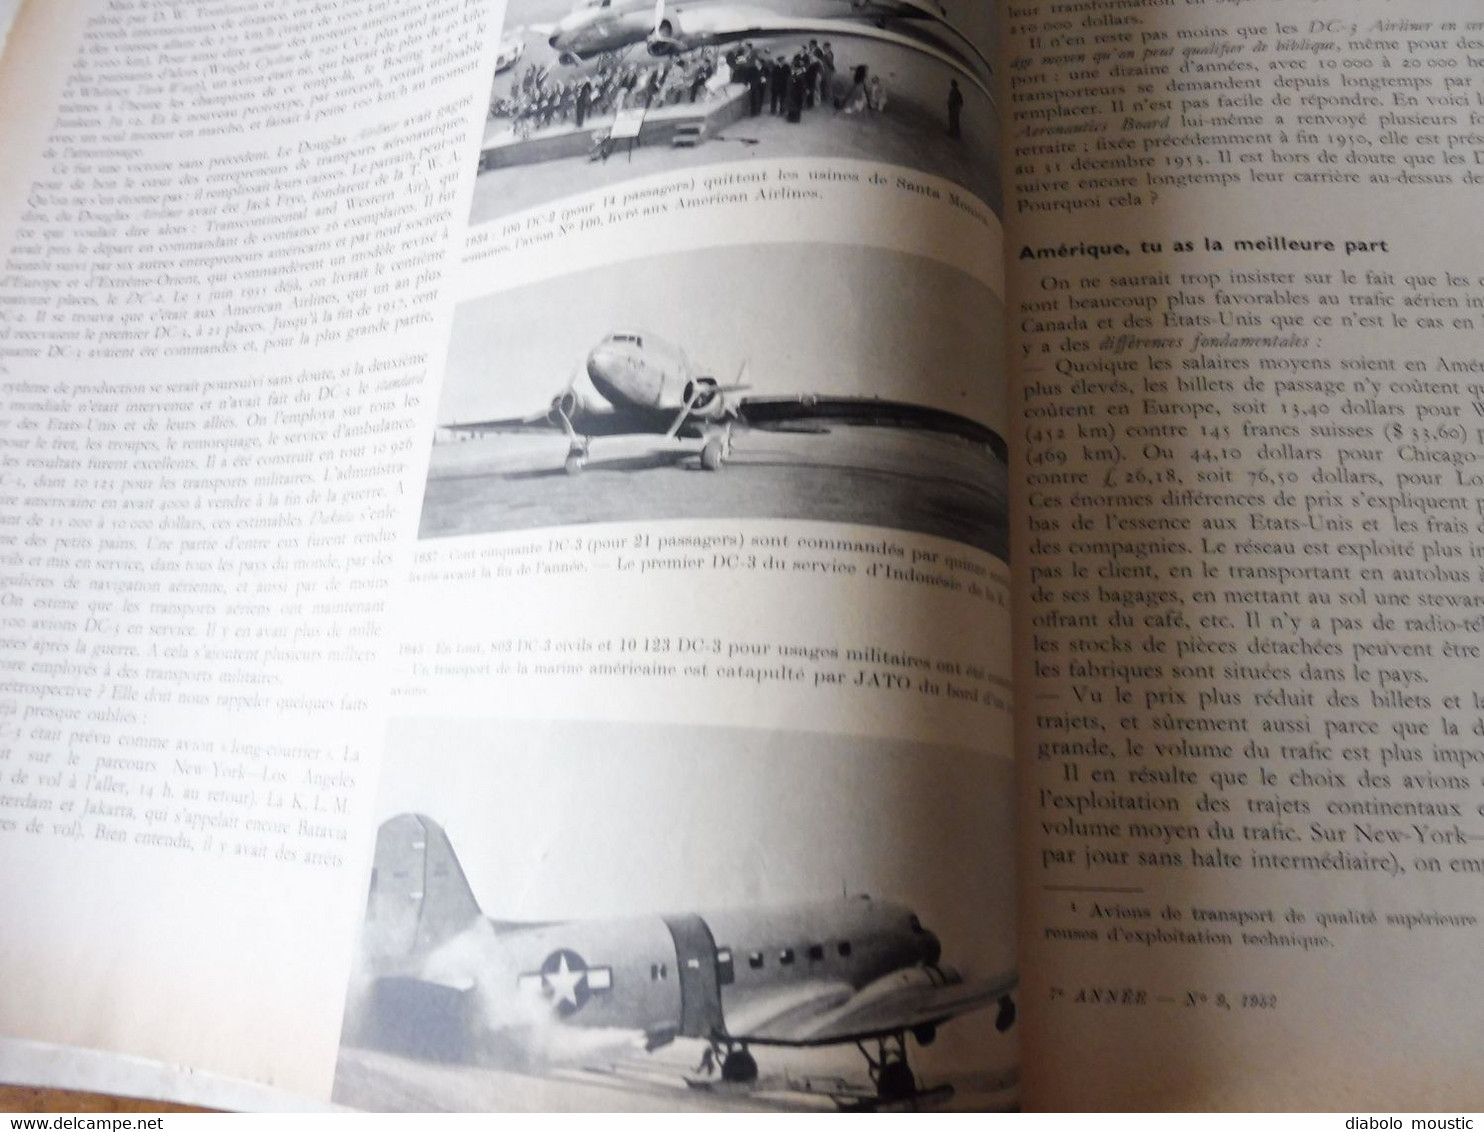 1952 INTERAVIA   (aviation ) -  Mort d'un avion ; Le DC-3;  Bataille aérienne en Corée ;  Etc